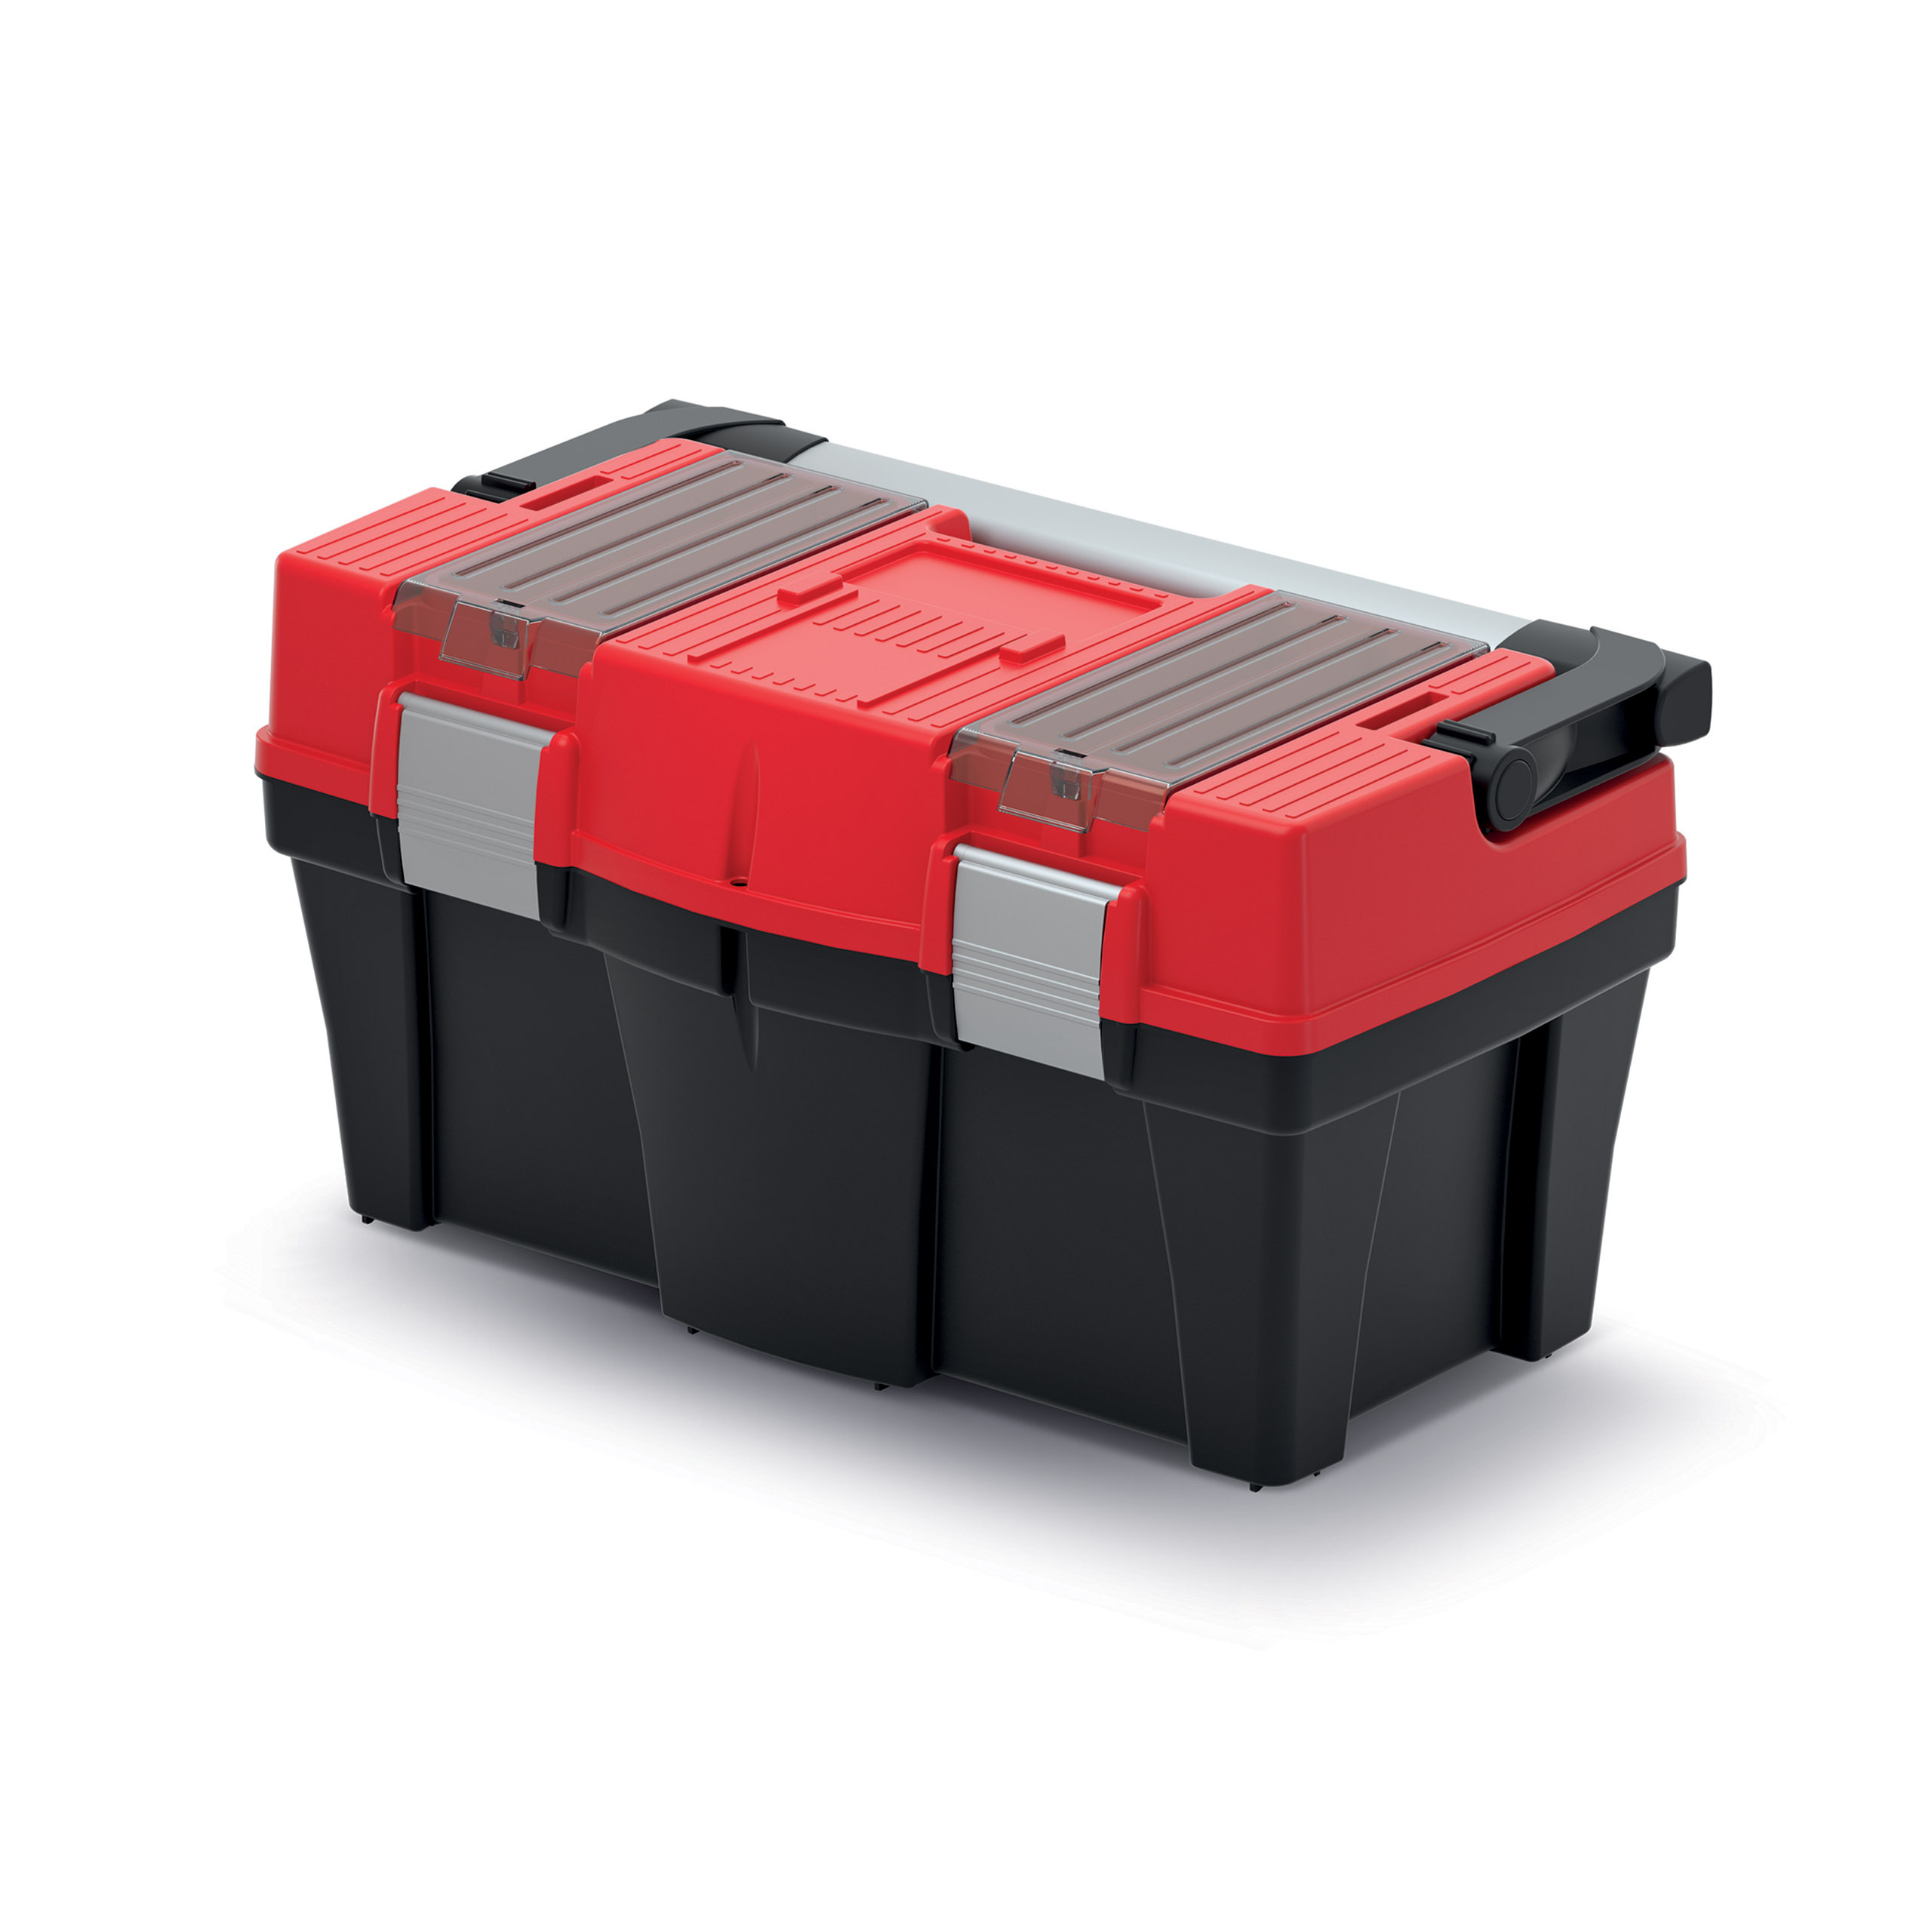 Aptop Plus toolbox KAP5025AL Red